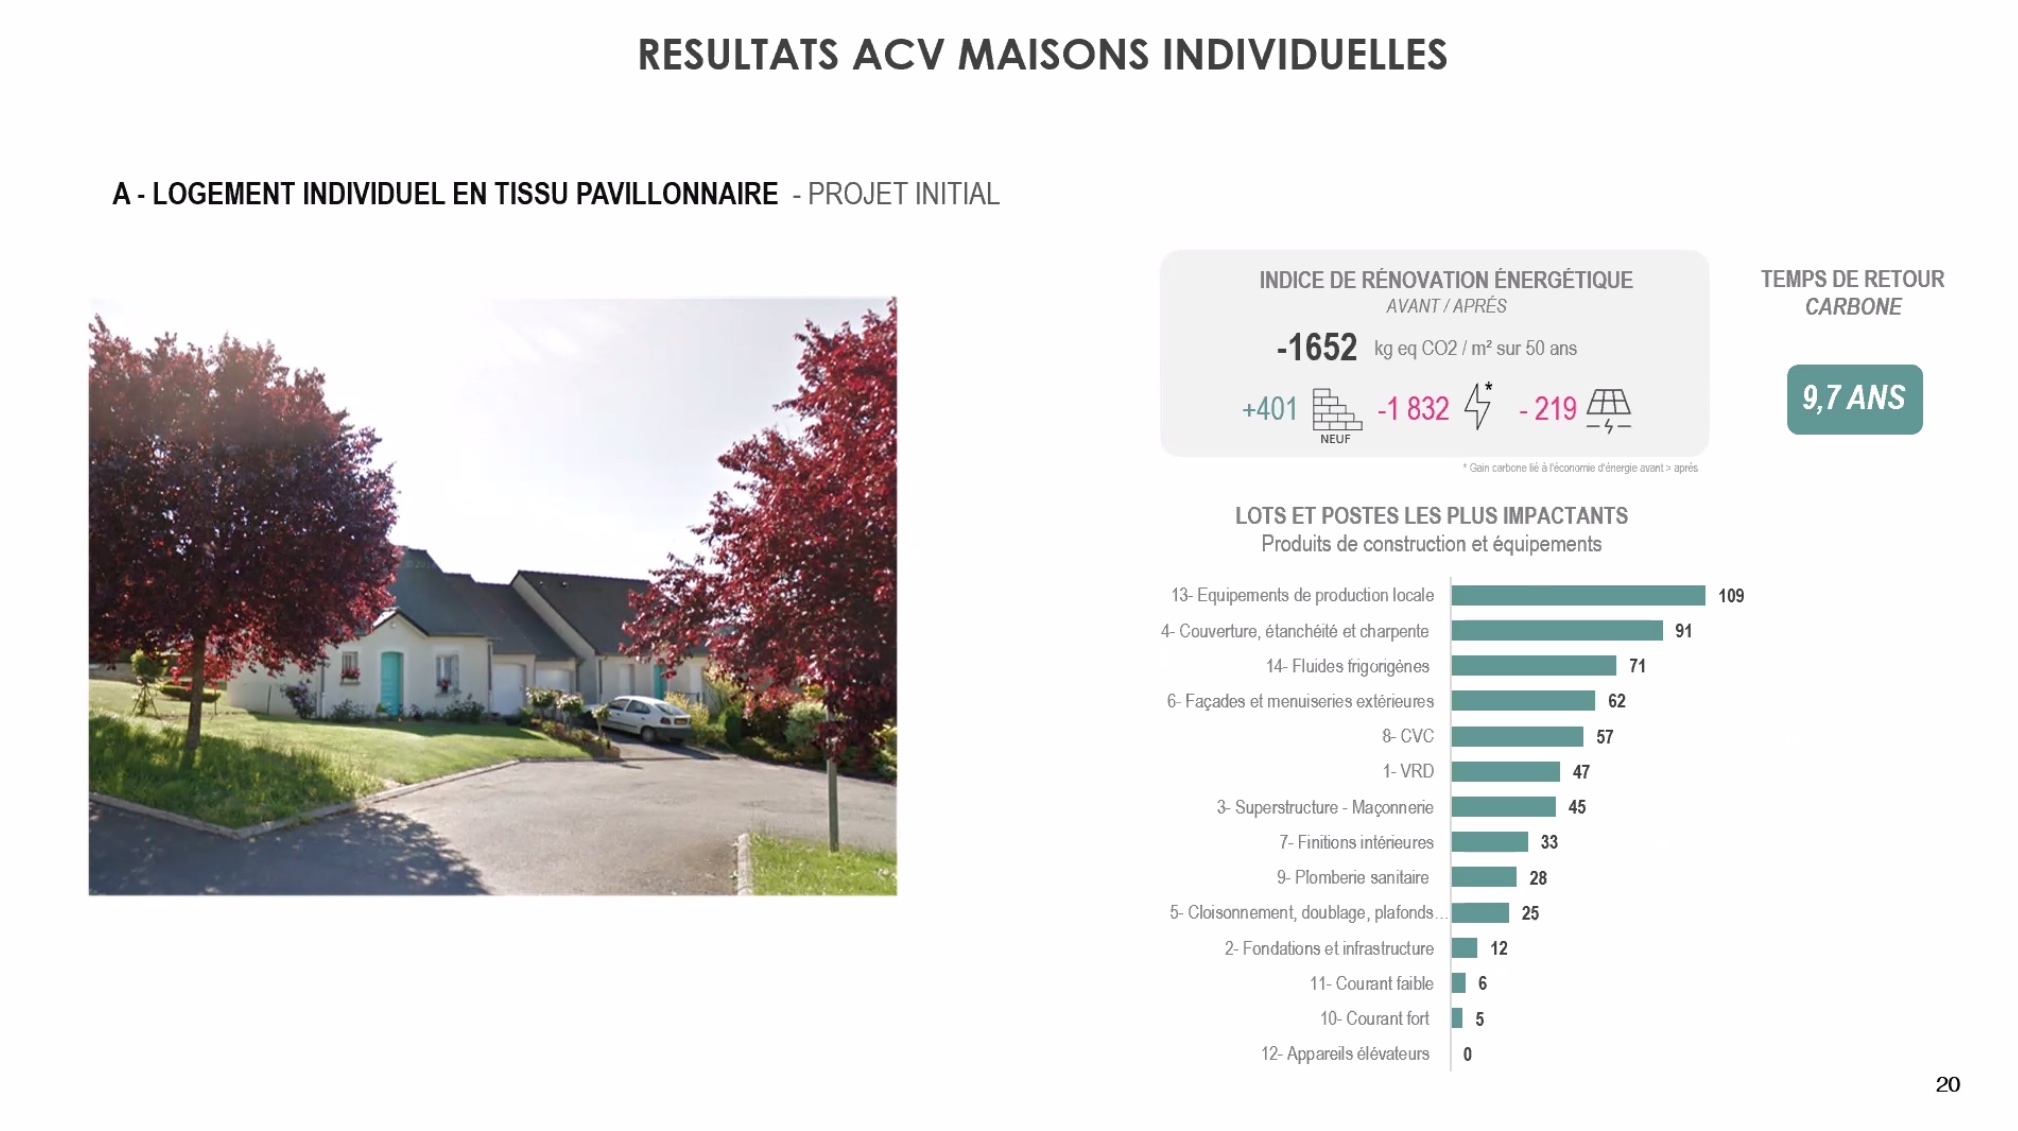 Calcul du temps de retour carbon suite aux travaux de rénovation des quatre maisons de Châteaugiron - Crédit photo : AIA Environnement